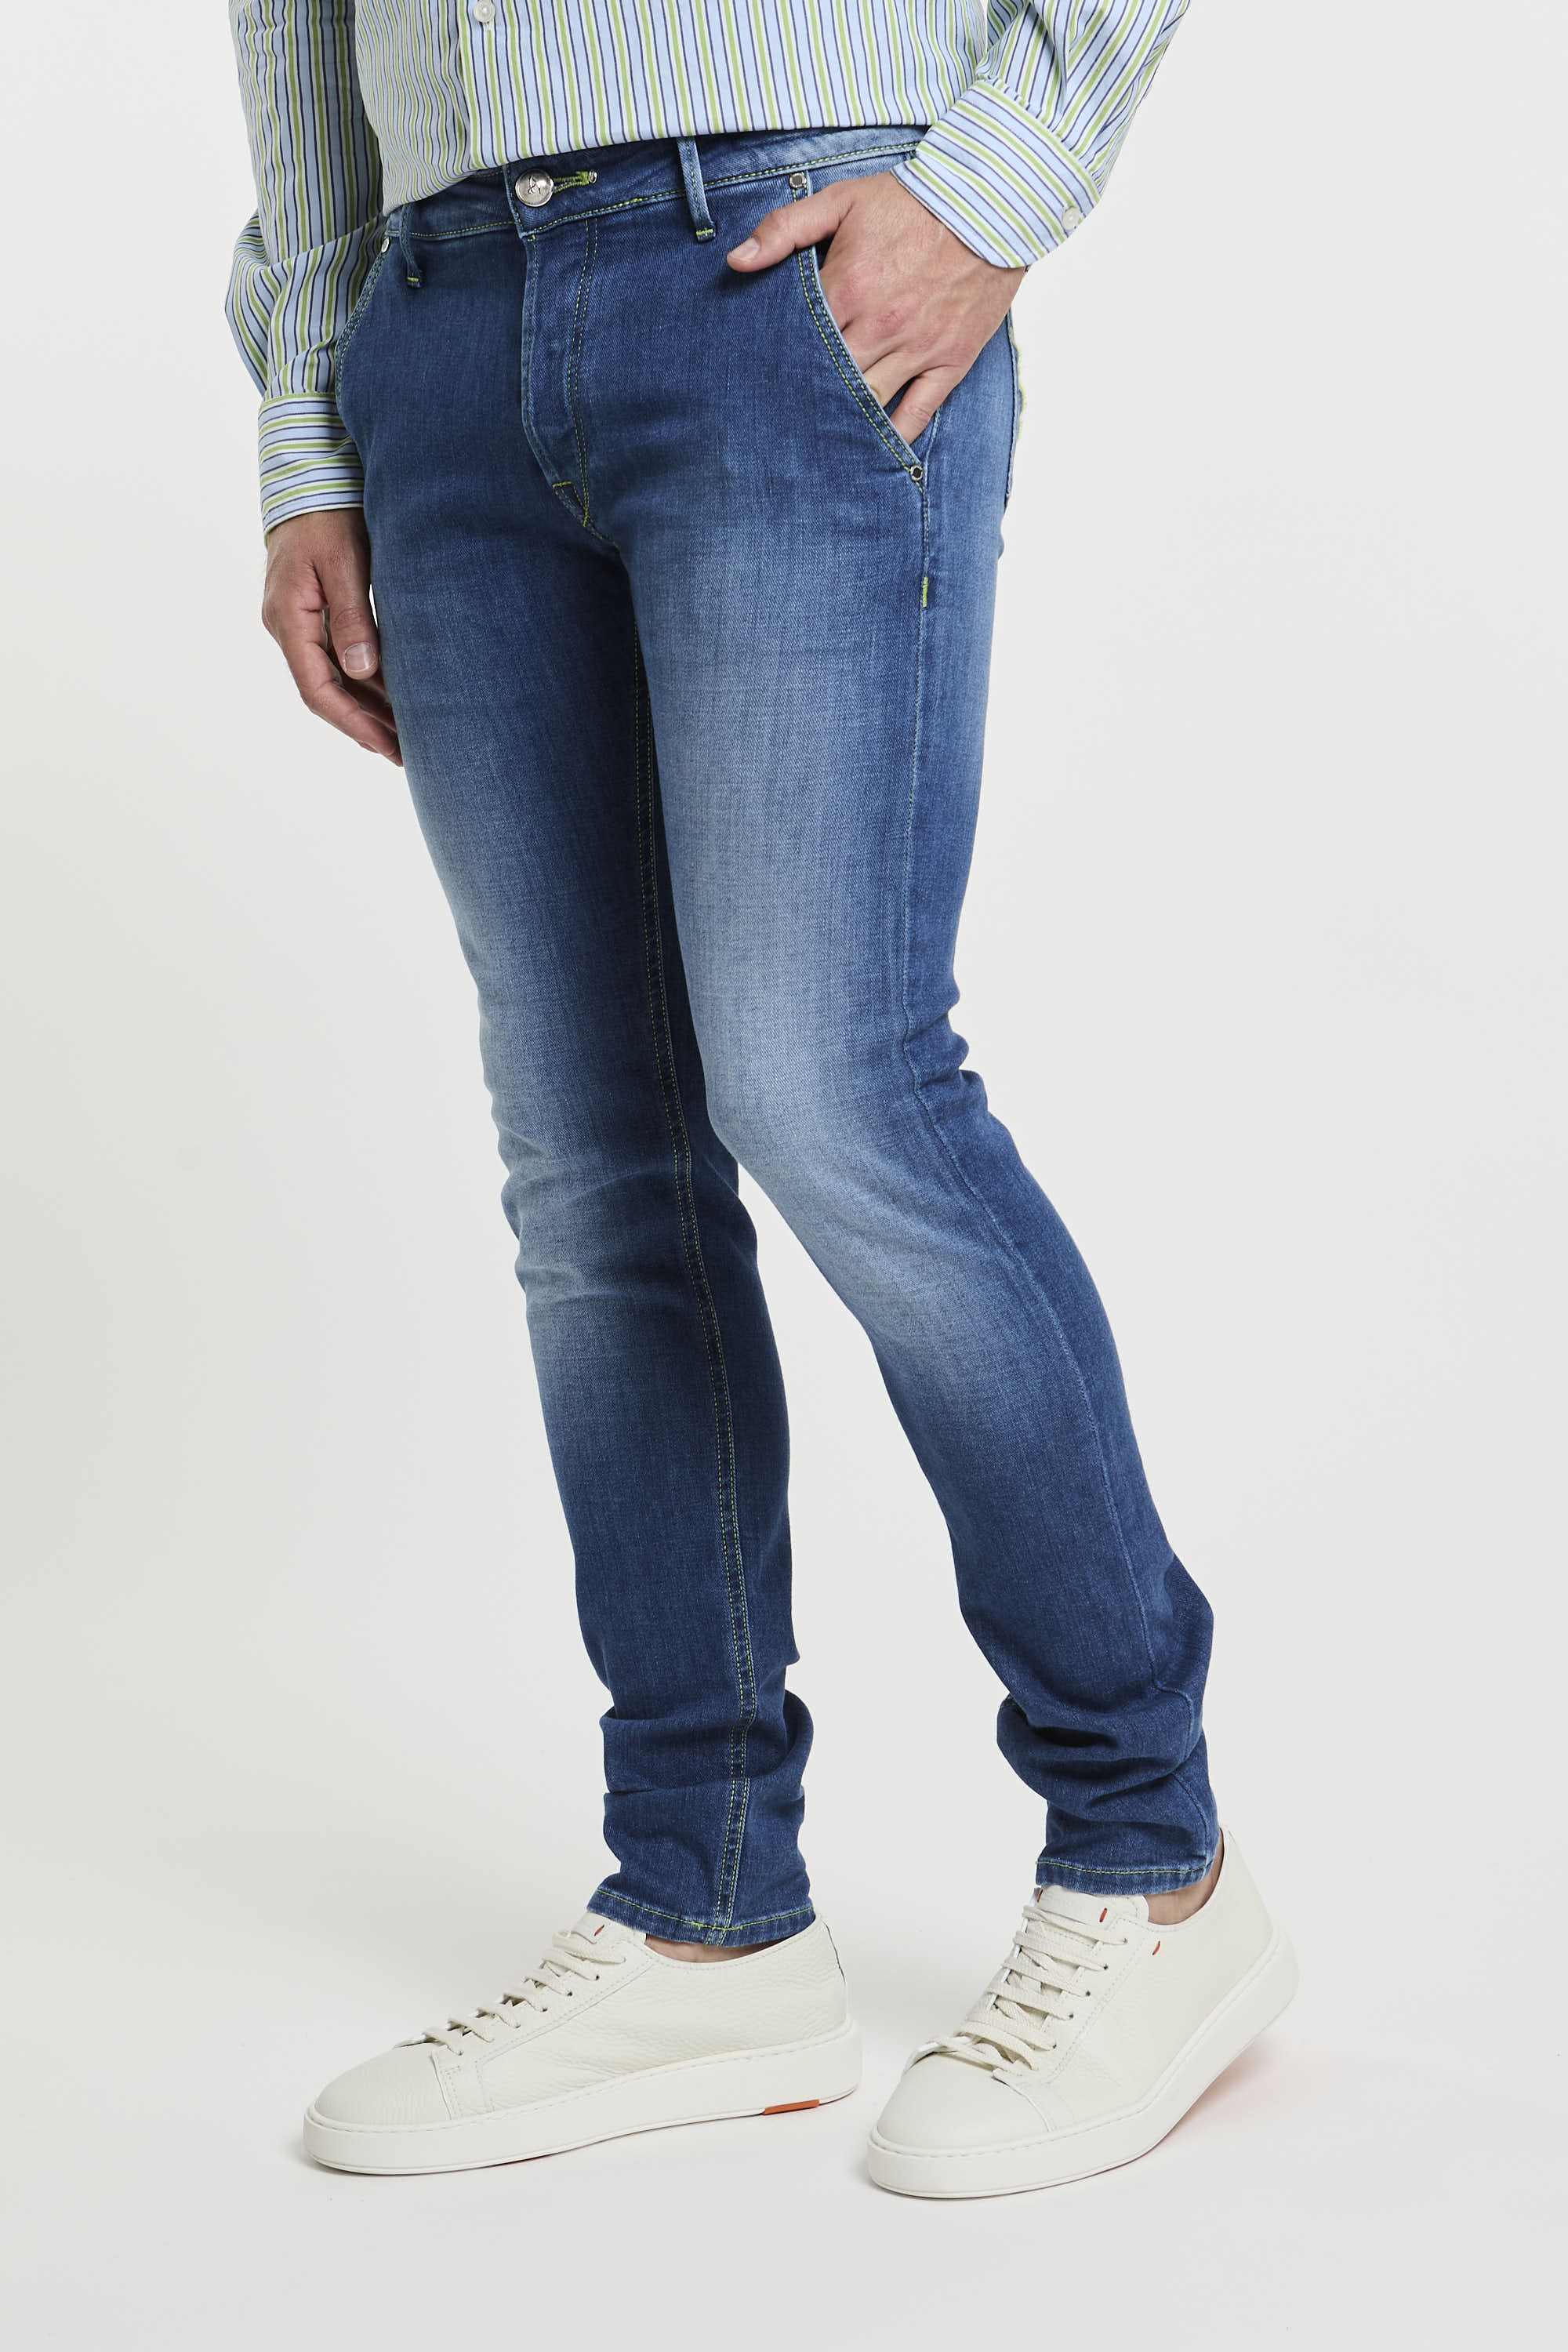 Handpicked Jeans Parma aus Denim-Baumwolle-1